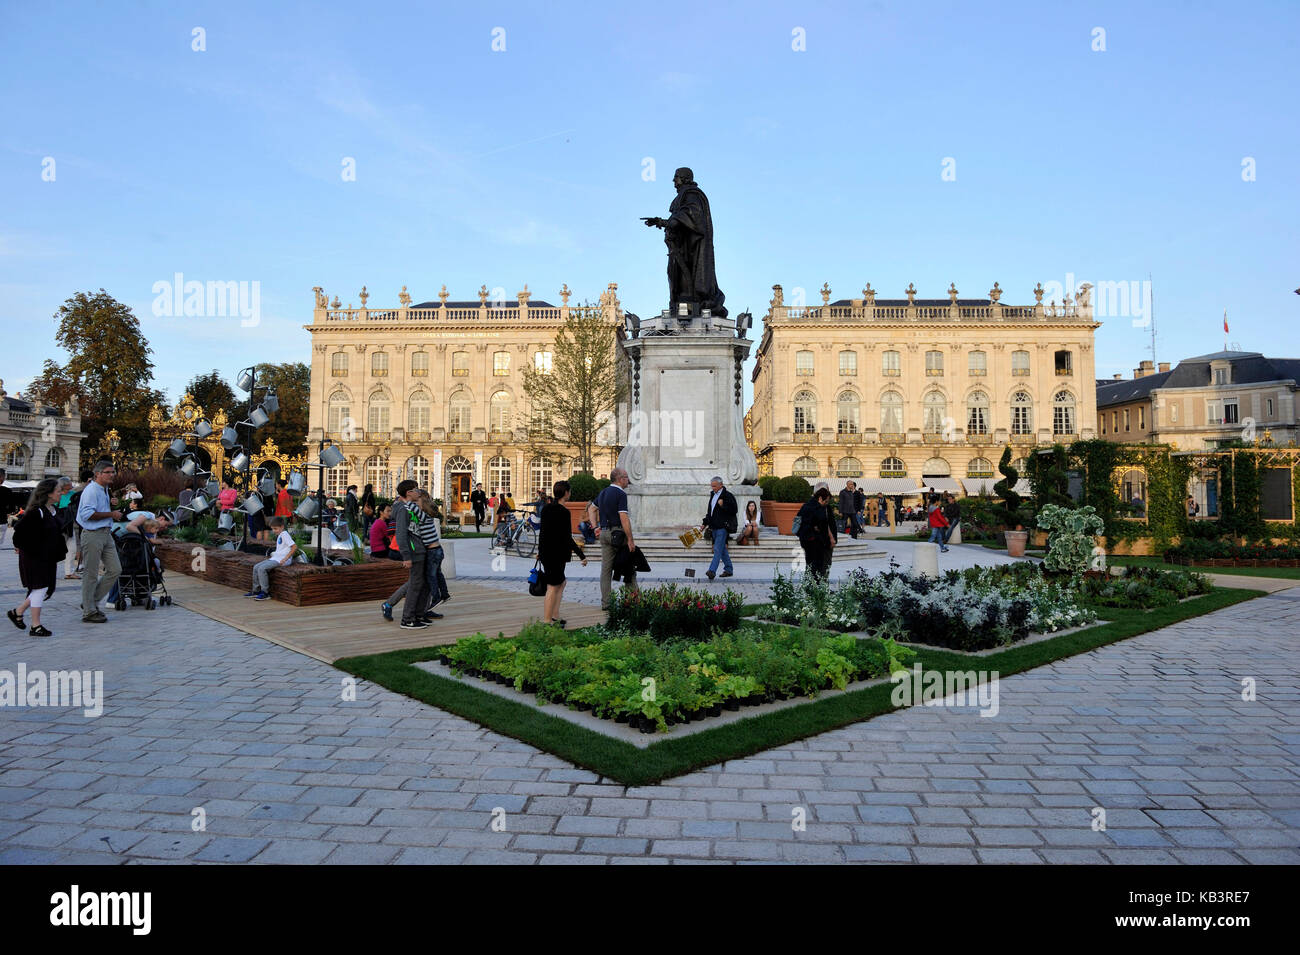 Francia, Meurthe et Moselle, Nancy, Place Stanislas (ex Place Royale) costruito da Stanislas Leszczynski nel 18 ° secolo, classificato come Patrimonio Mondiale dall'UNESCO, statua del re Stanislas Leszczynski Foto Stock